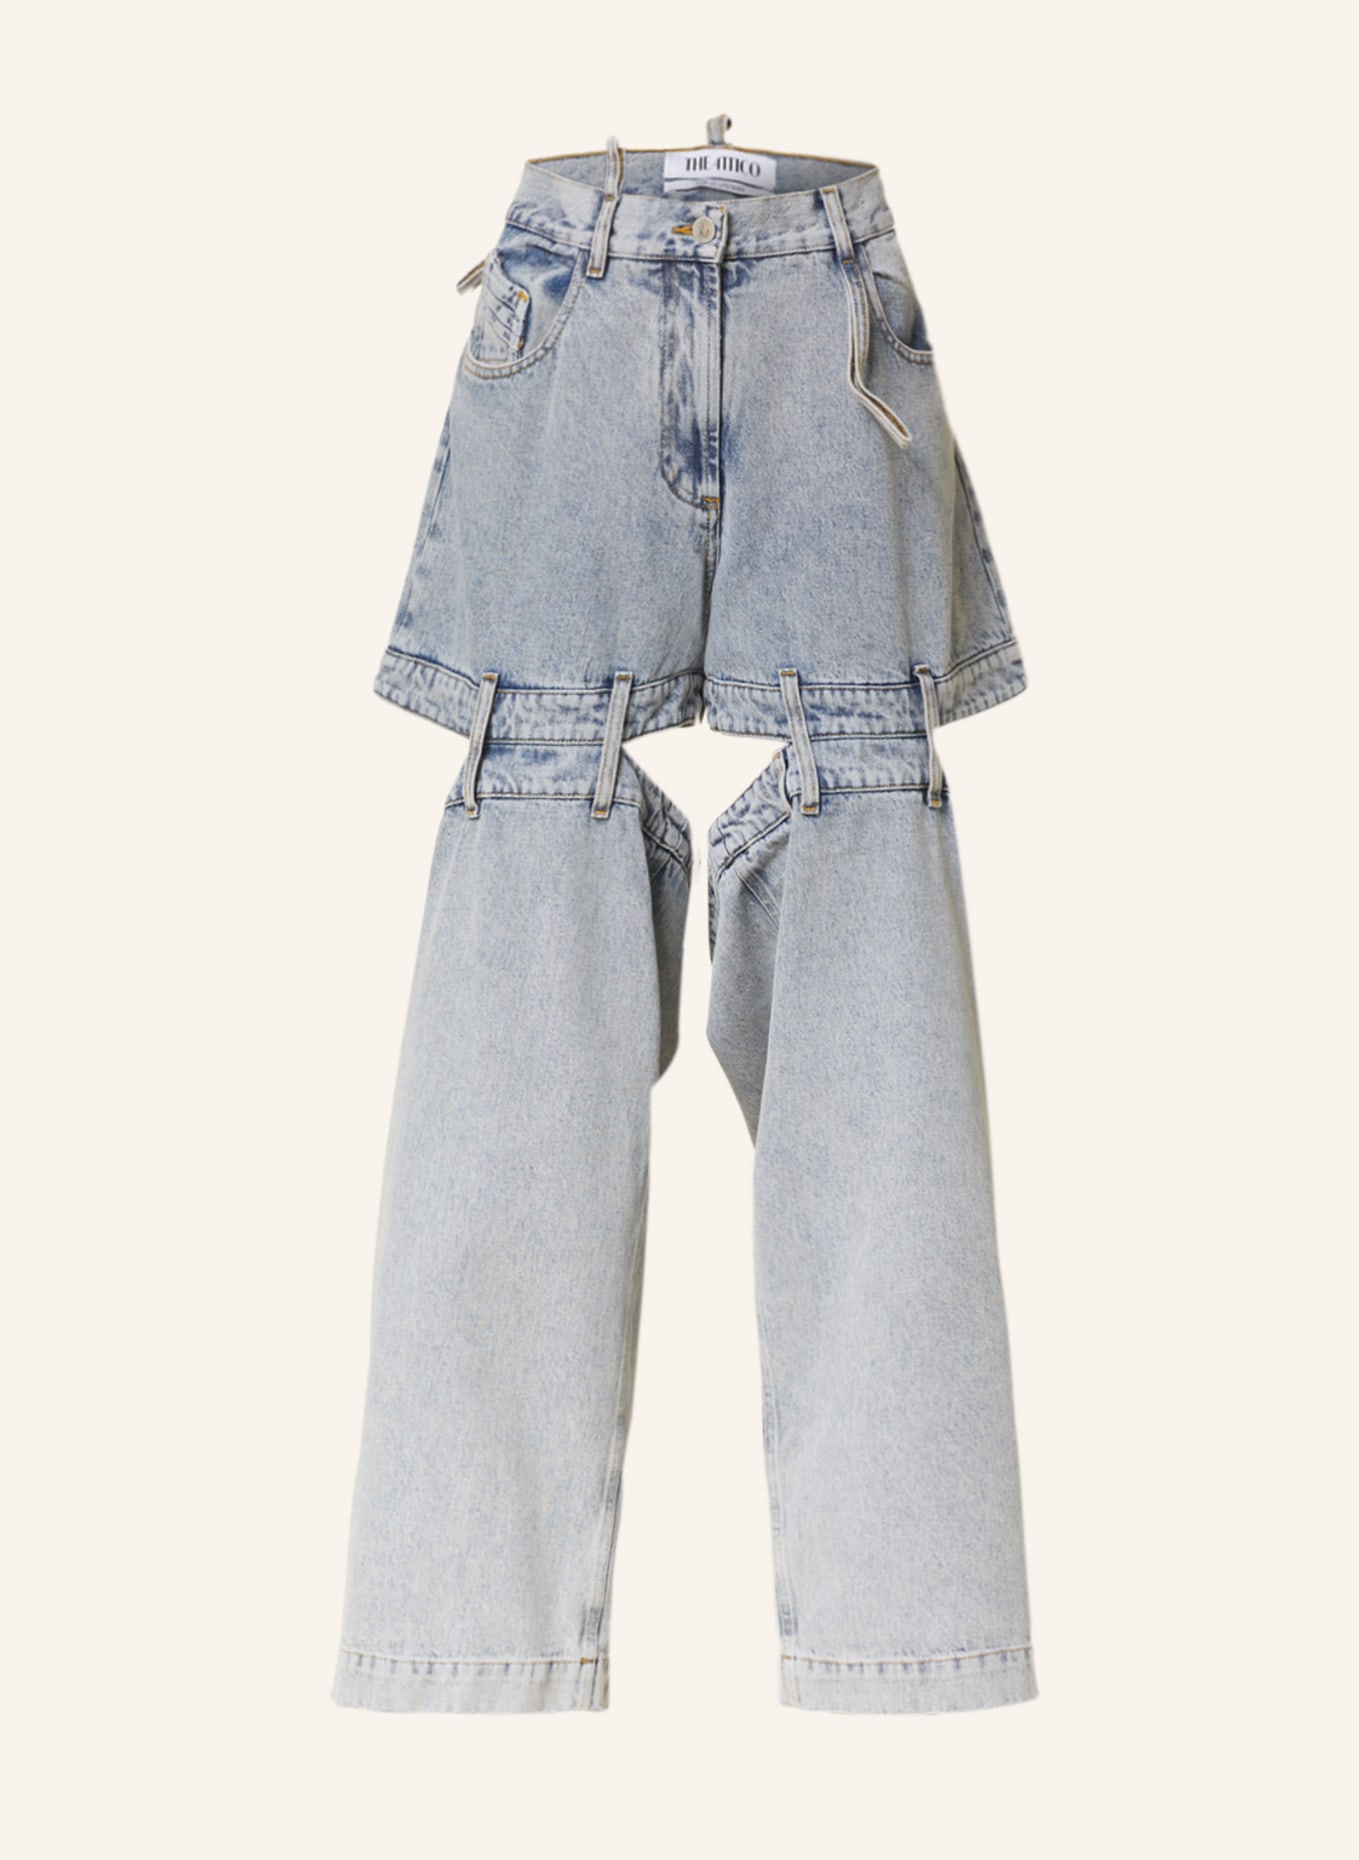 THE ATTICO Jeans-Culotte ASHTON, Farbe: 518 Vintage Blue (Bild 1)